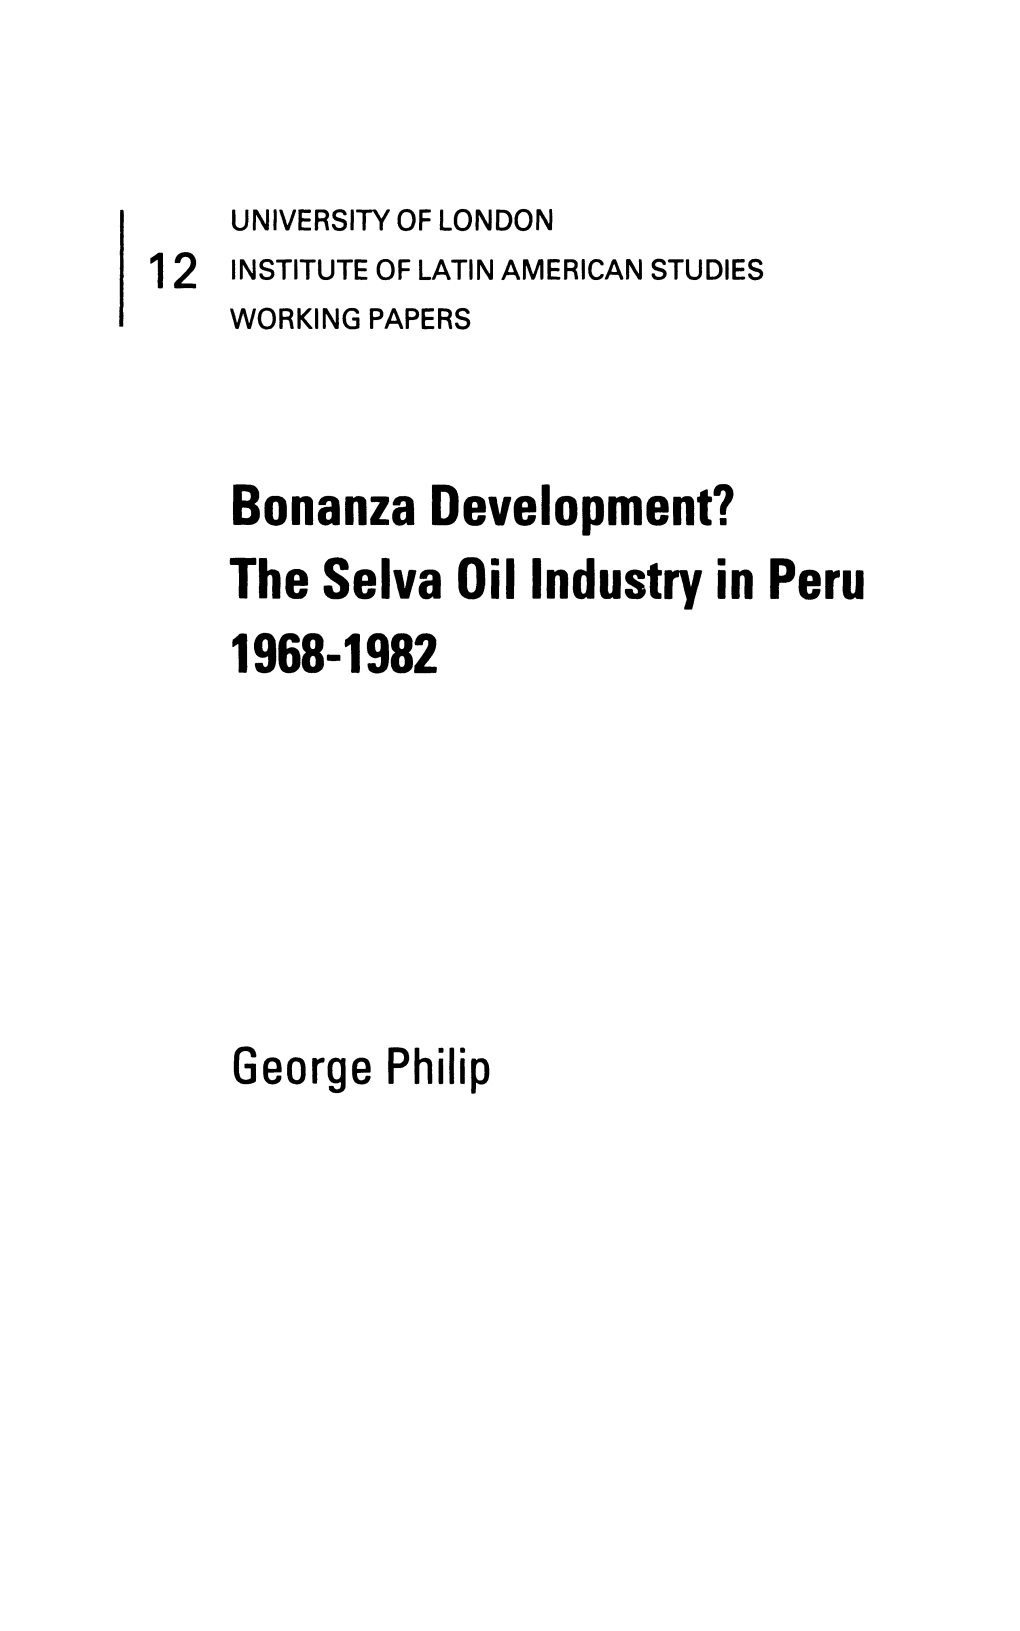 Bonanza Development? the Selva Oil Industry in Peru 1968-1982